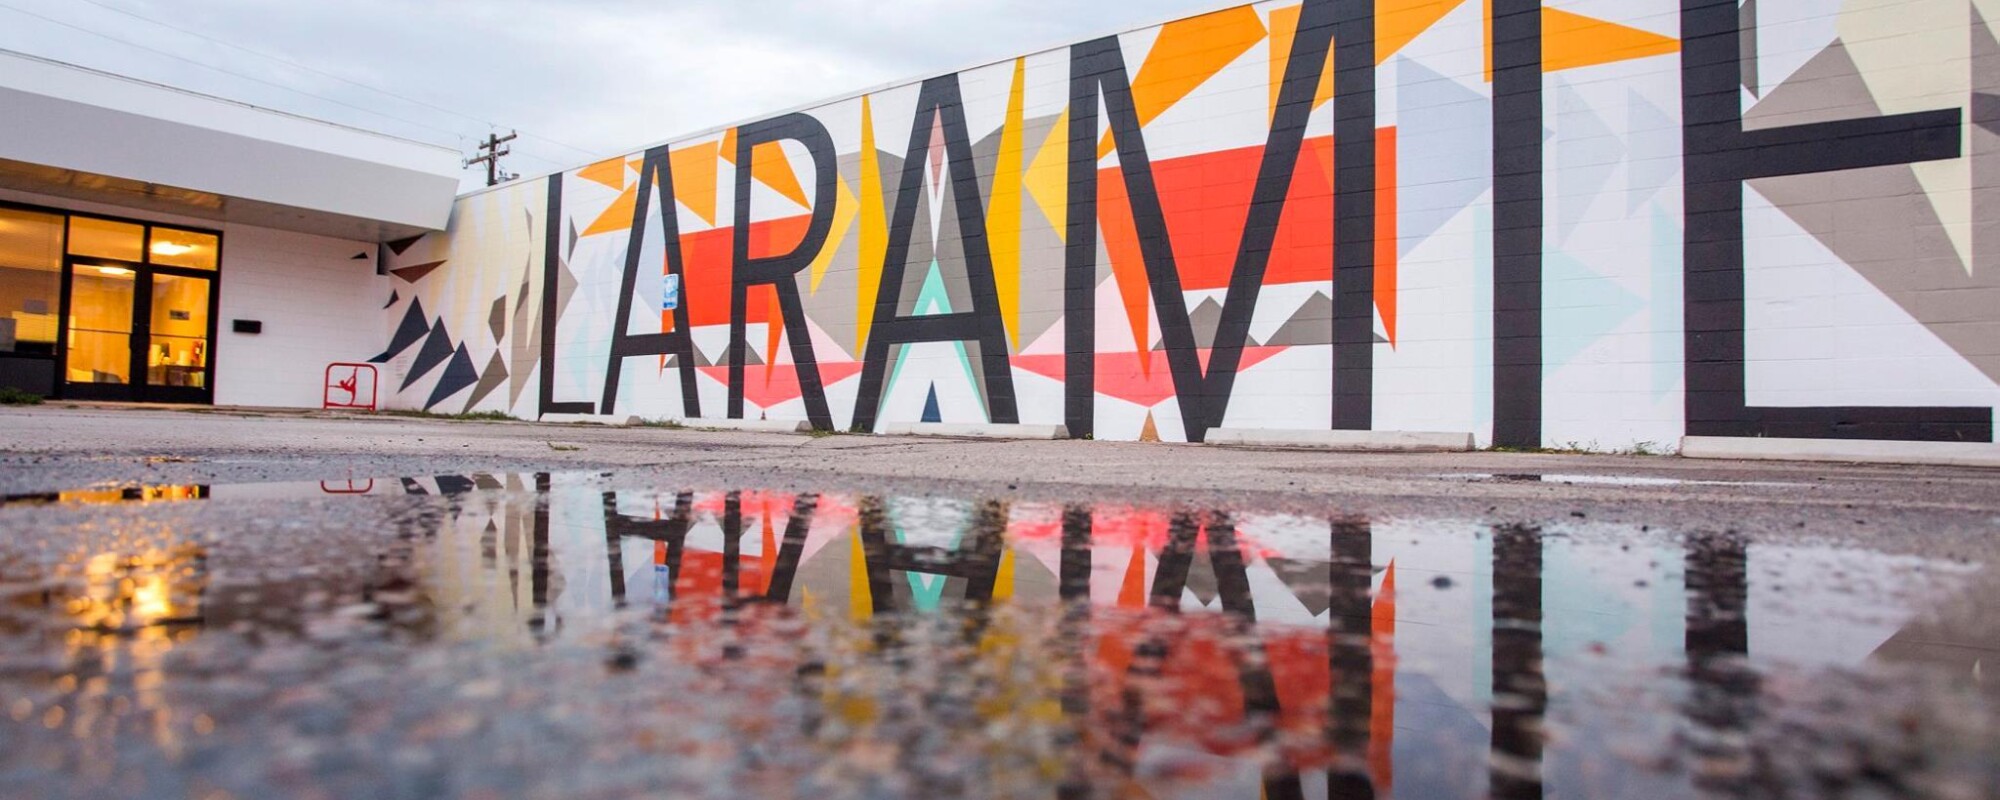 Mural con la palabra "LARAMIE" reflejada en el charco de un aparcamiento.